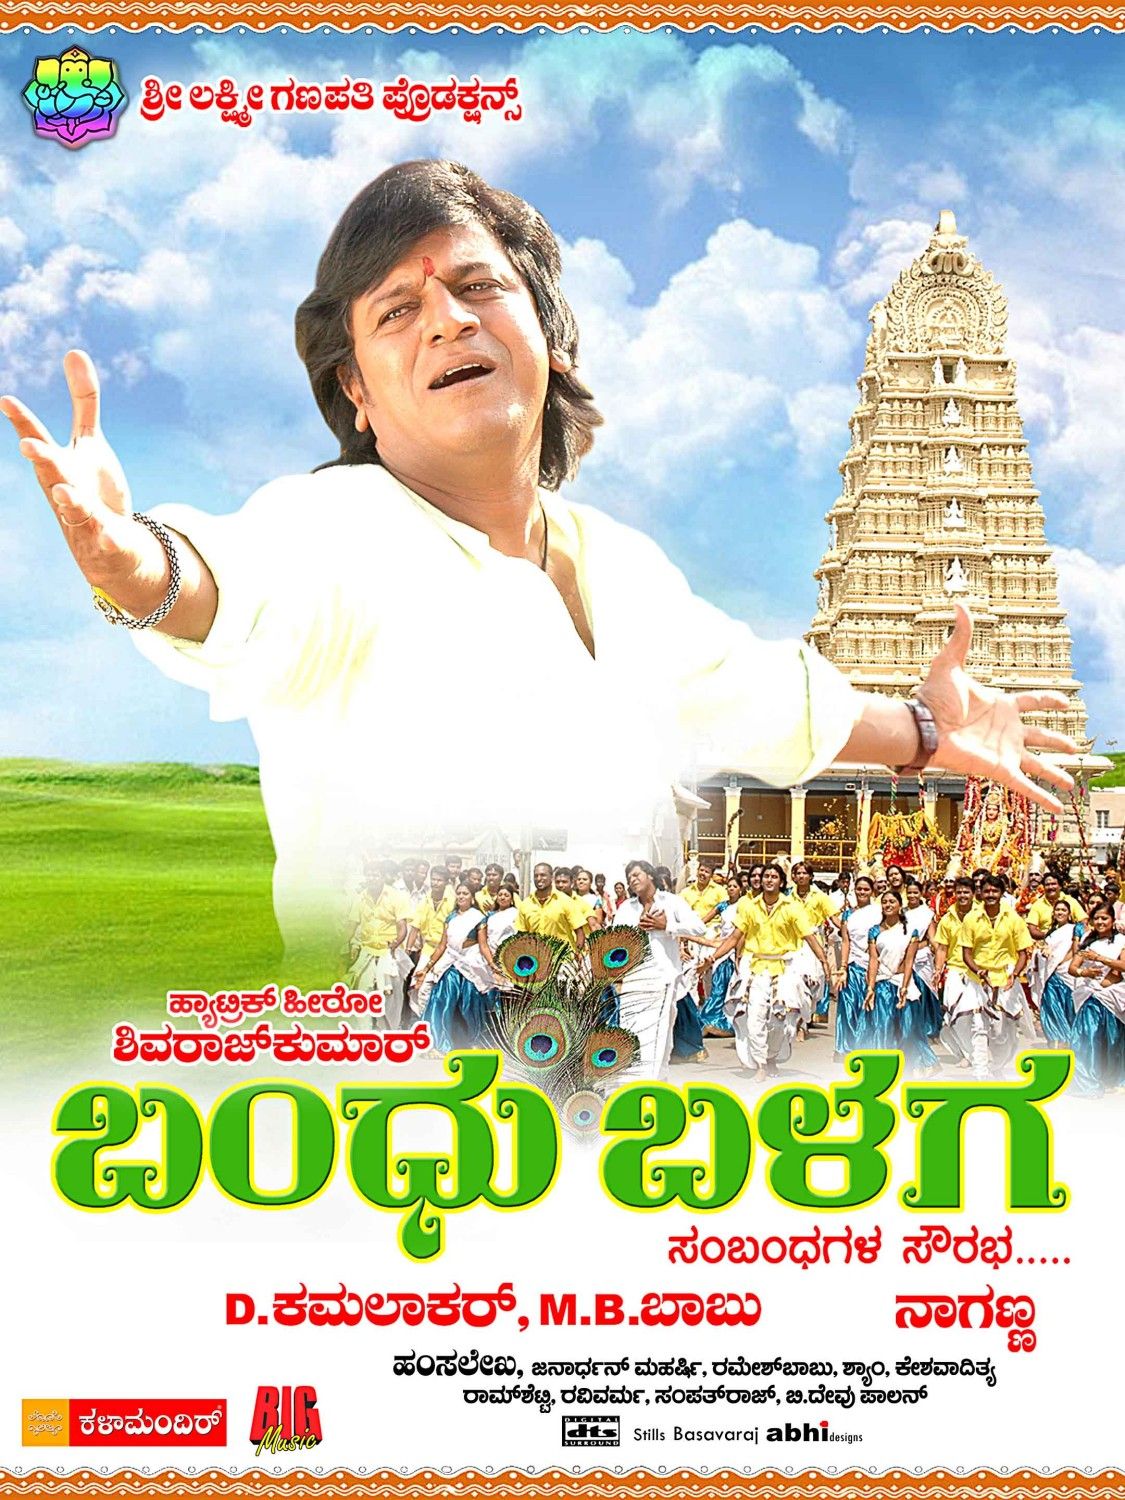 Extra Large Movie Poster Image for Bandu Balaga (#8 of 11)